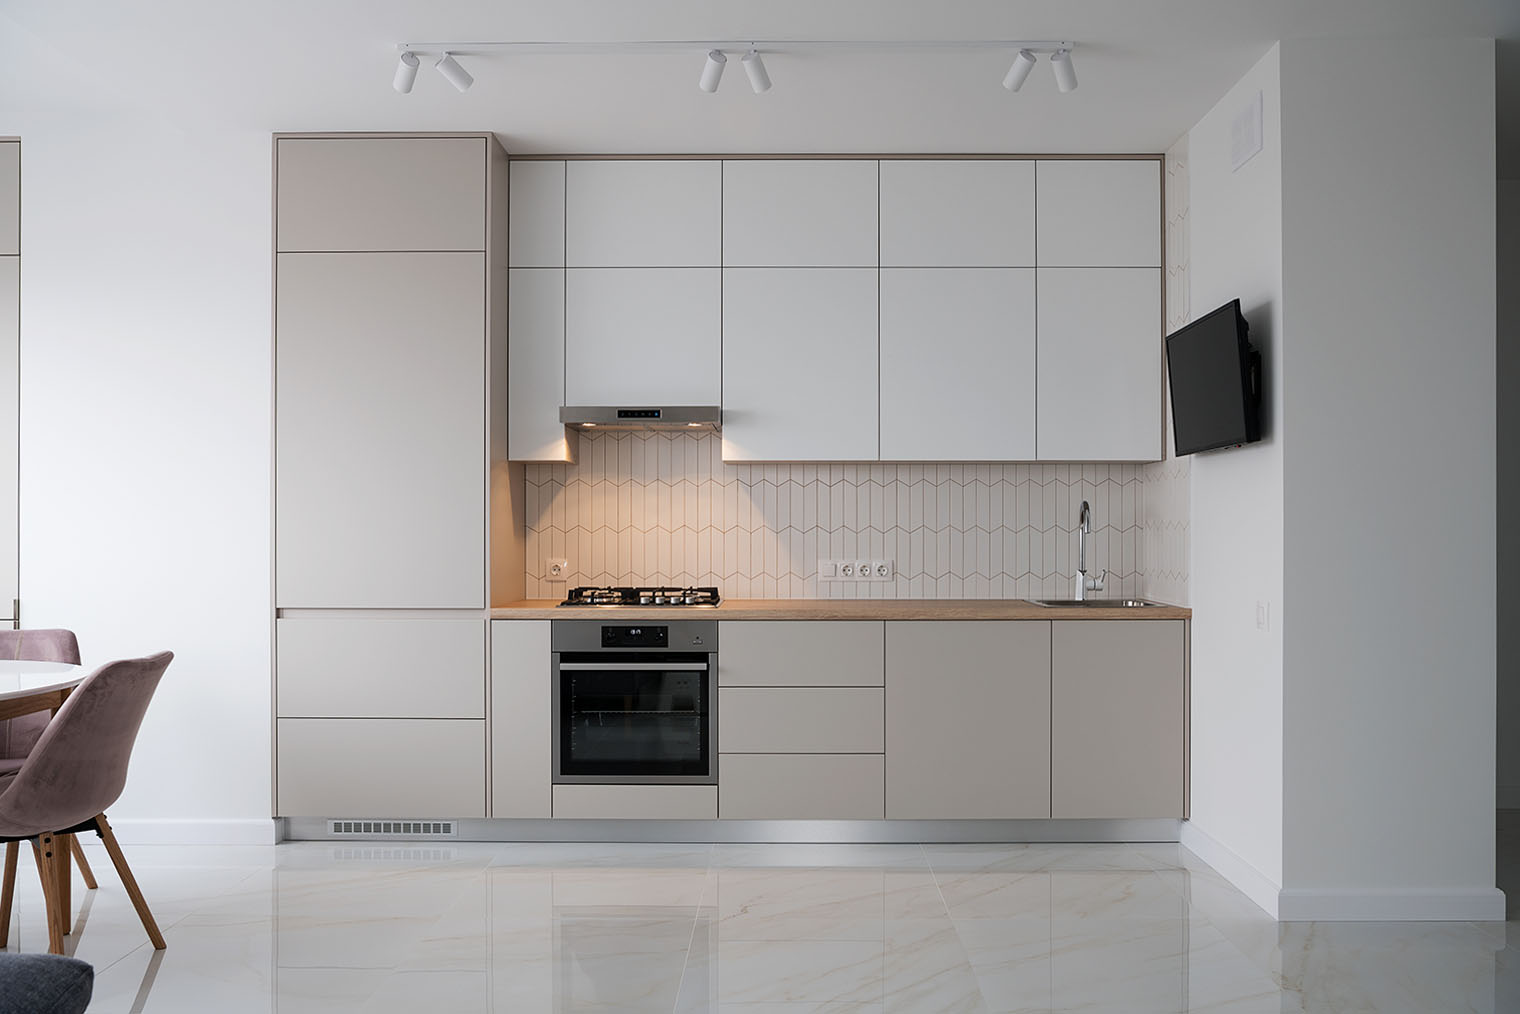 Современная кухня: уклон в минимализм, гладкие фасады со скрытыми ручками, сочетание дерева с оттенками серого и высокие верхние шкафы. Фотография: nelea33 / Shutterstock